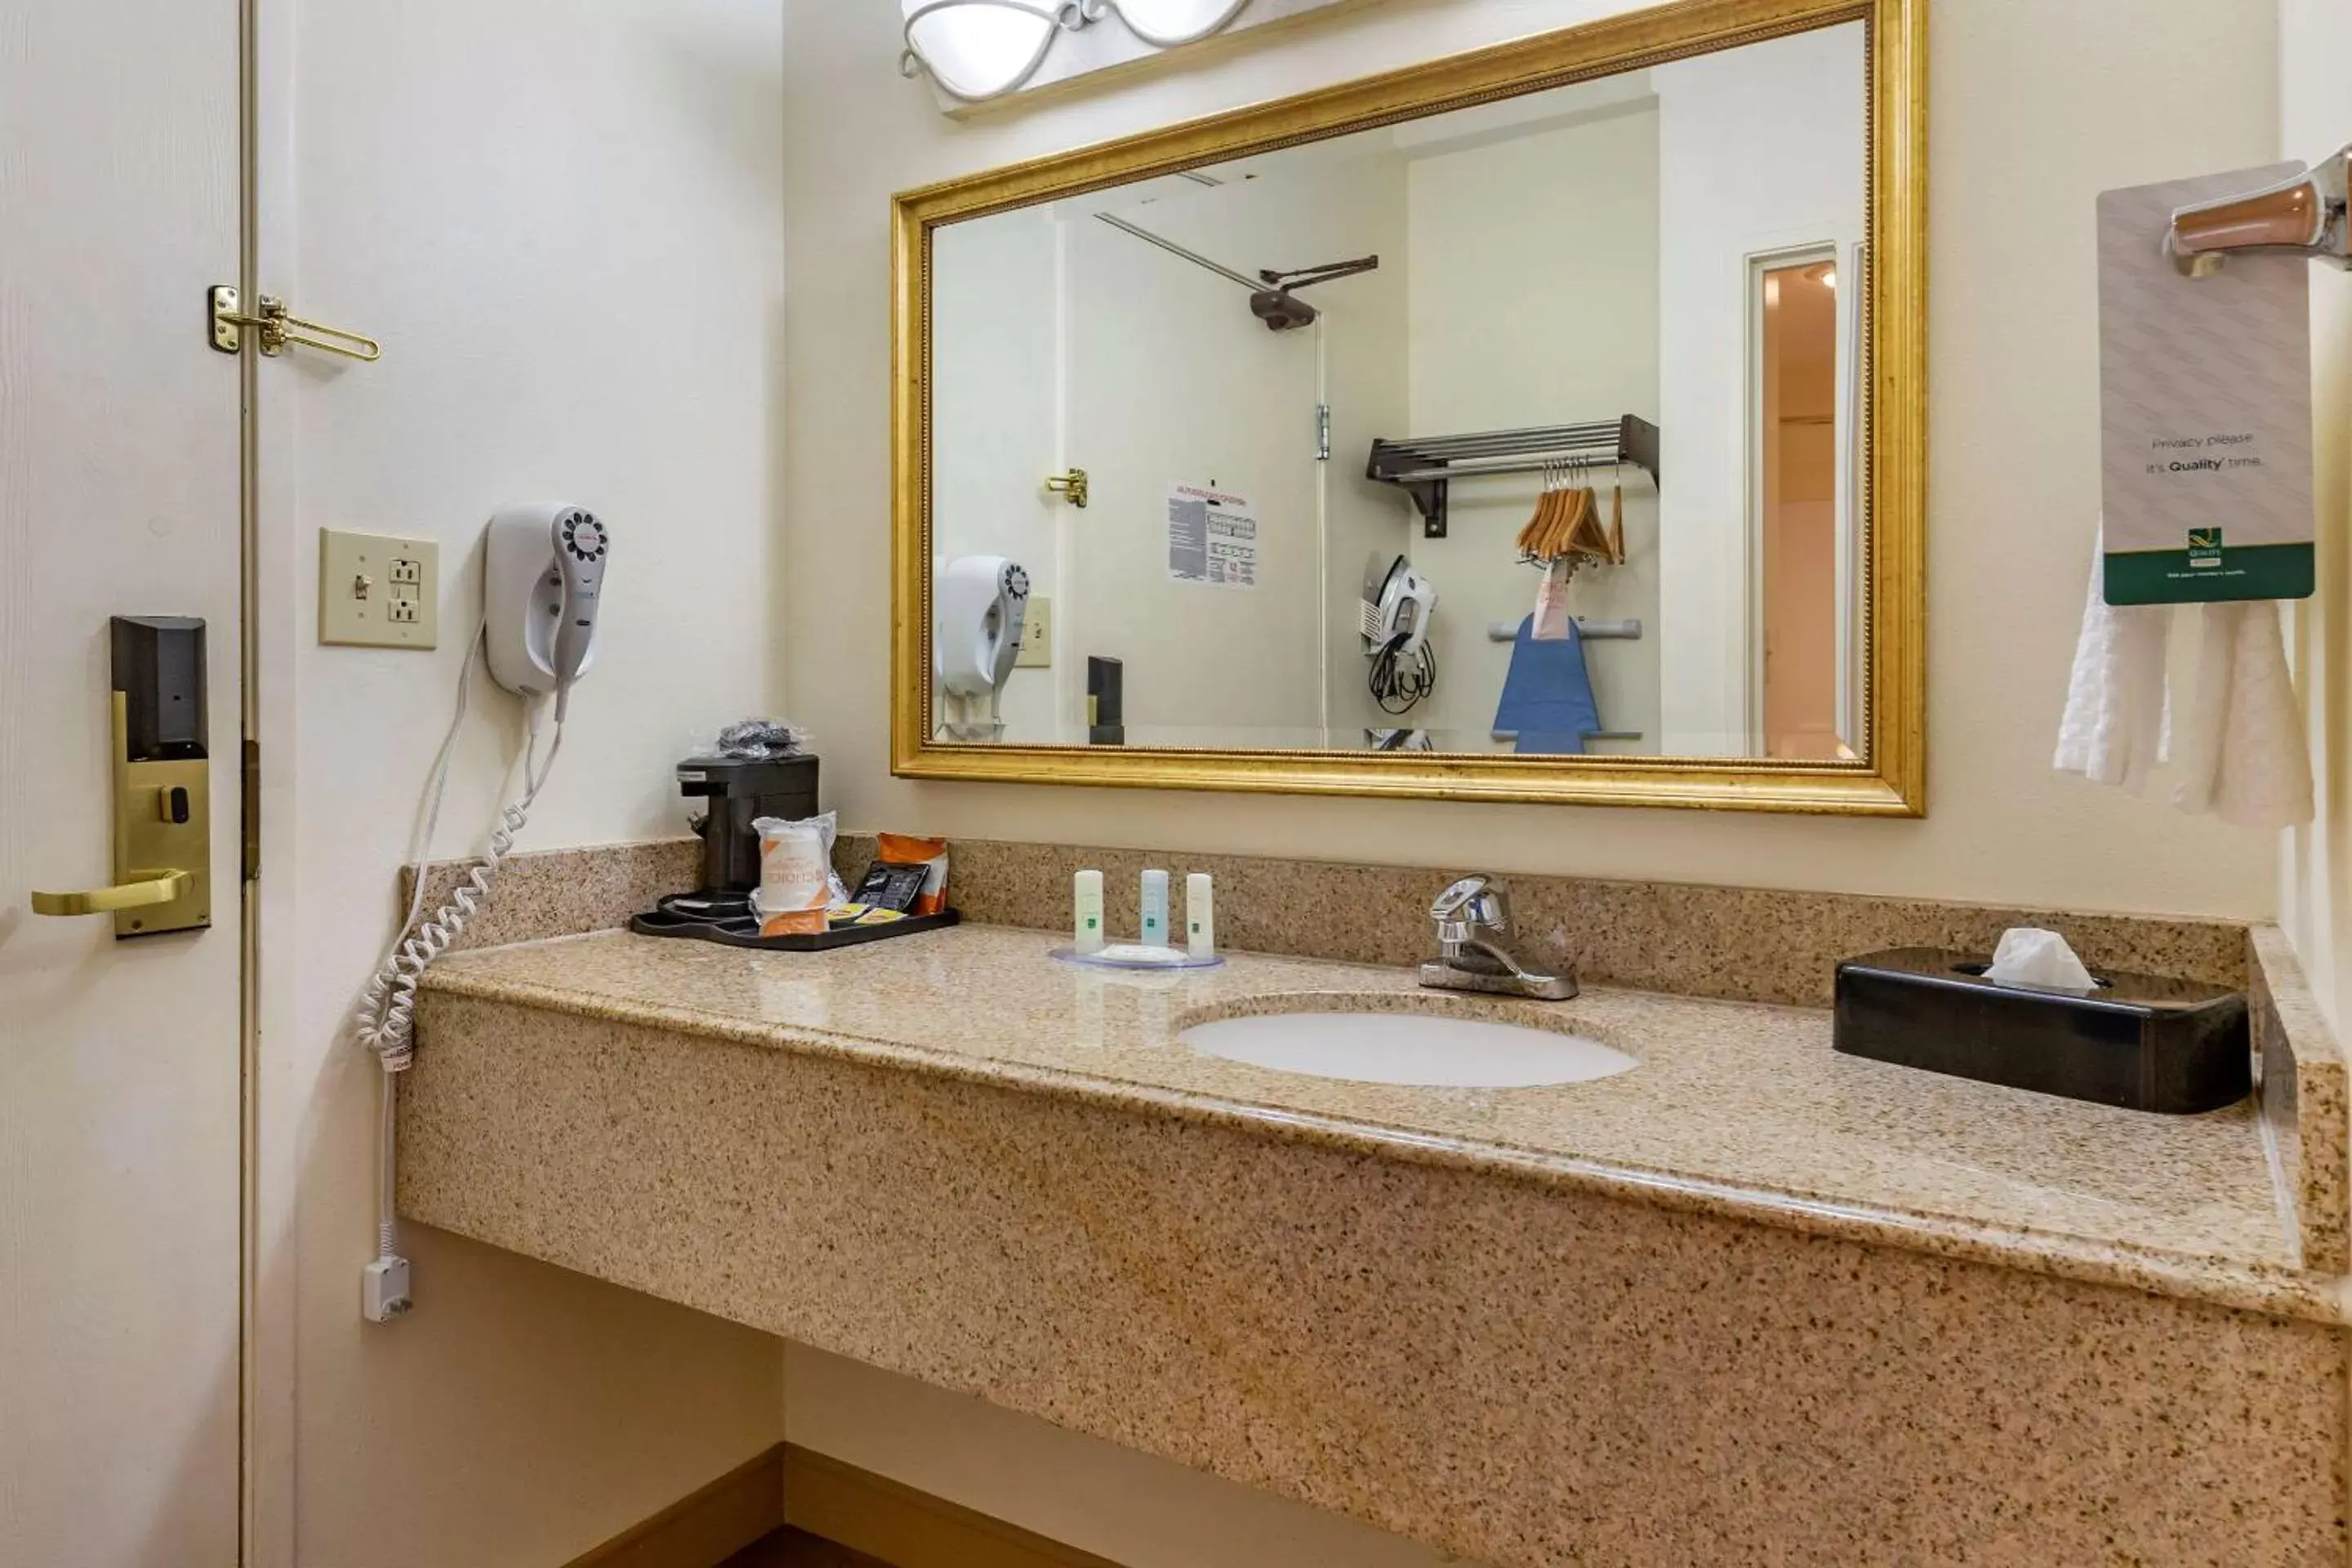 Bedroom, Bathroom in Quality Inn & Suites Raleigh Durham Airport